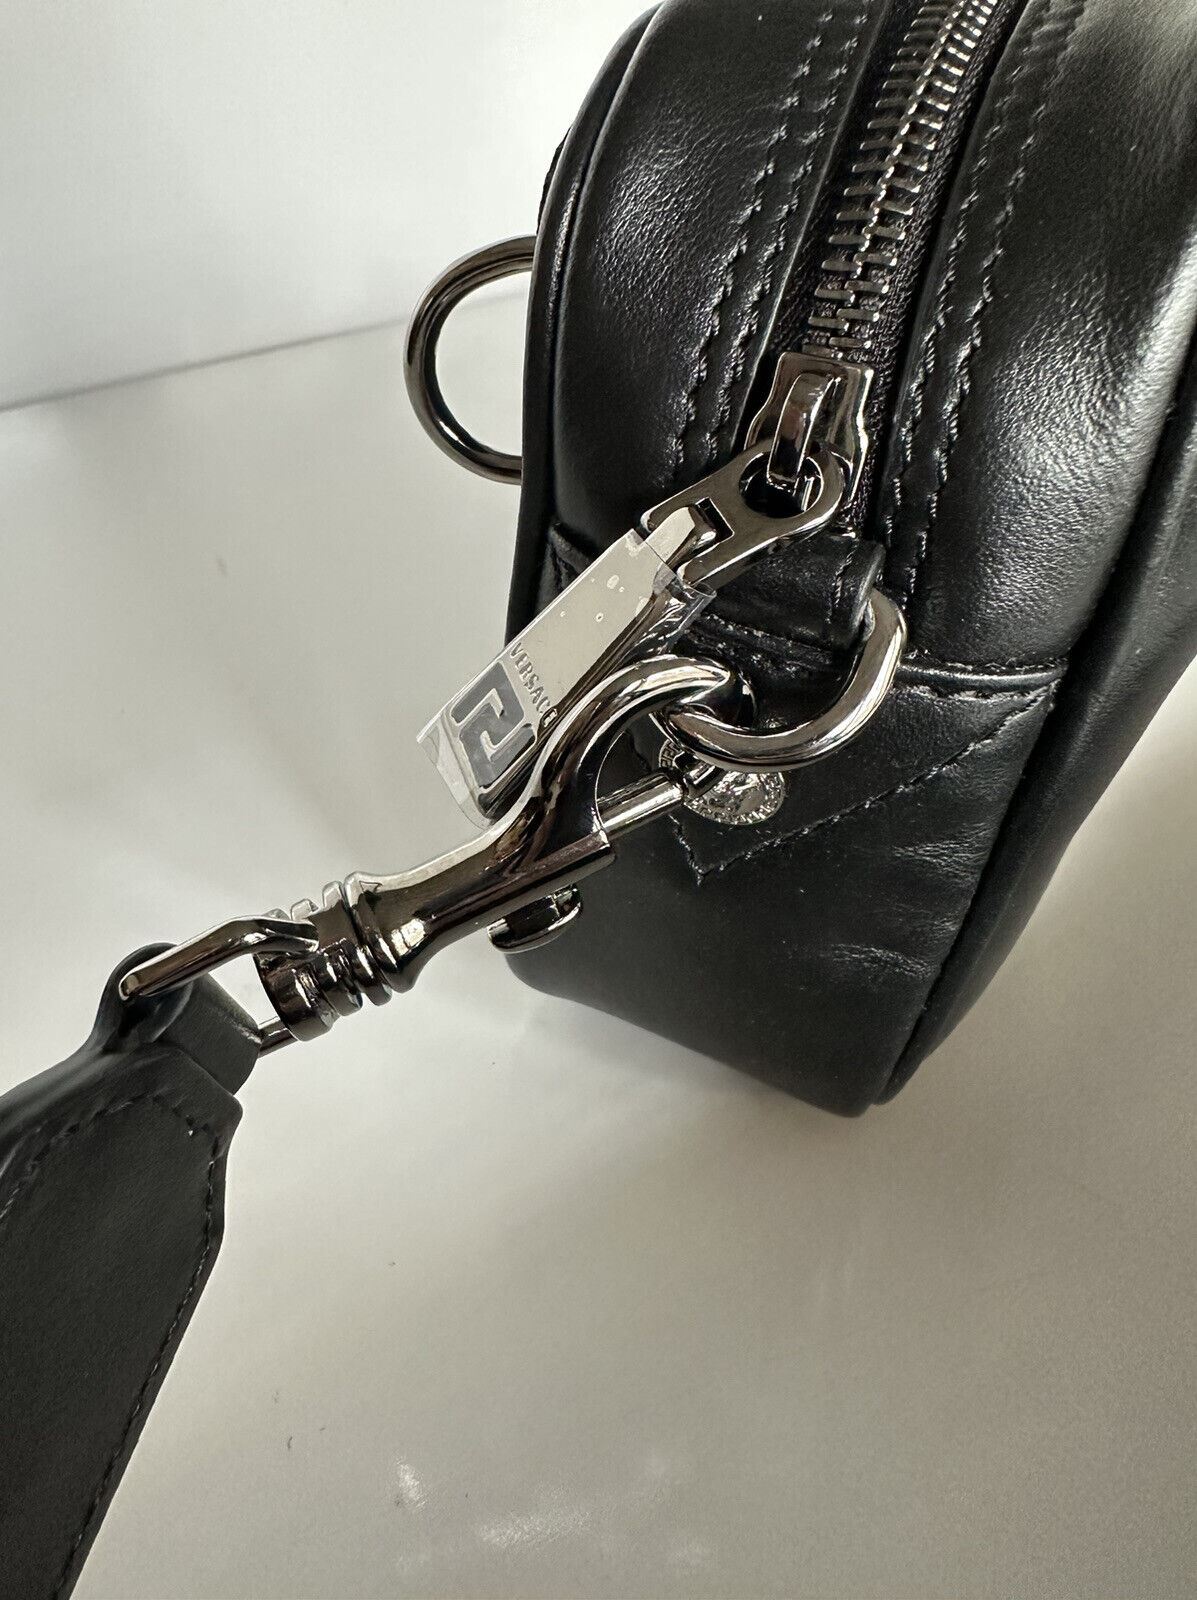 Мужская сумка через плечо из телячьей кожи Versace Injection Logo, NWT $1000, черная 1006180 